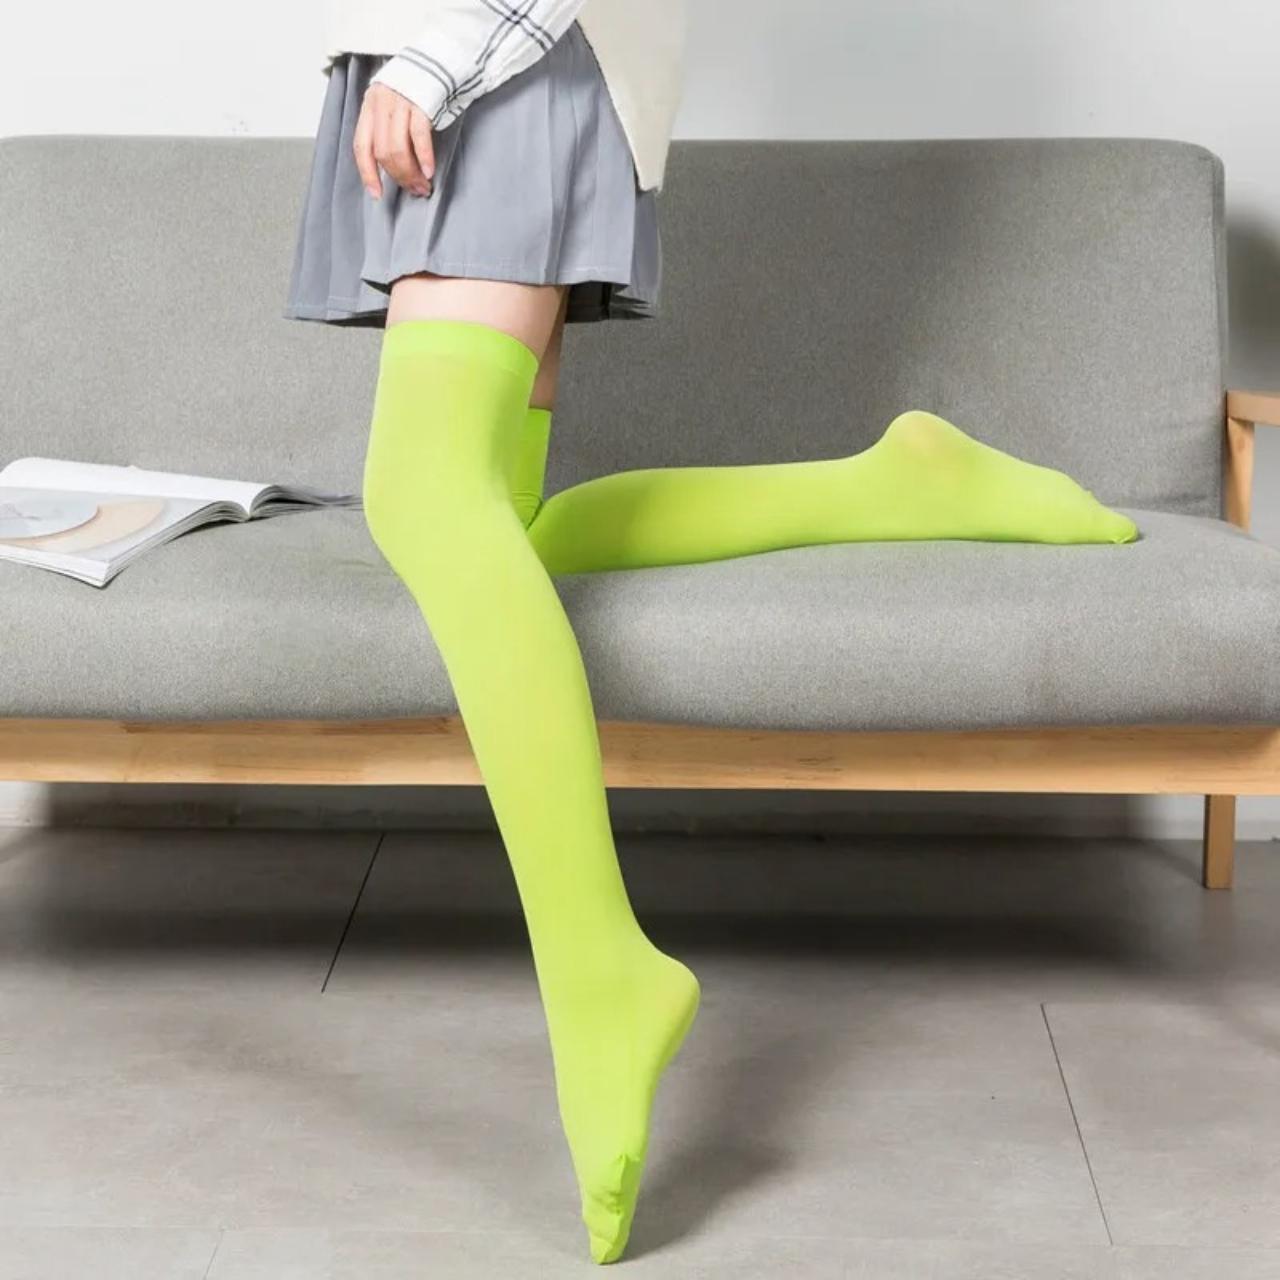 Women's Green Socks & Tights